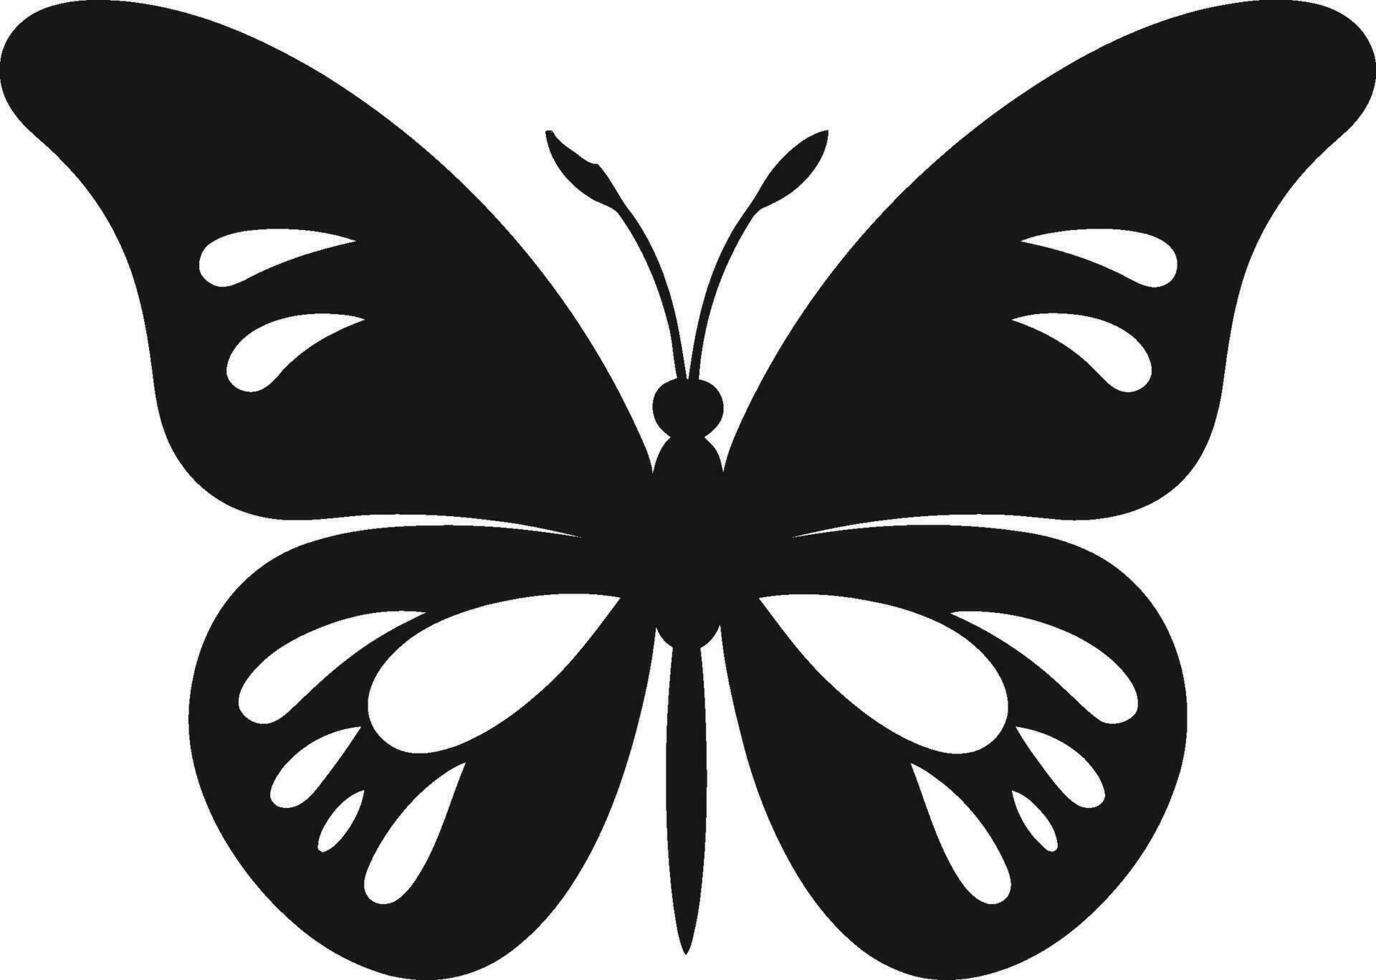 fjäril charm en mark av elegans i noir invecklad flyg elegant fjäril design i svart vektor